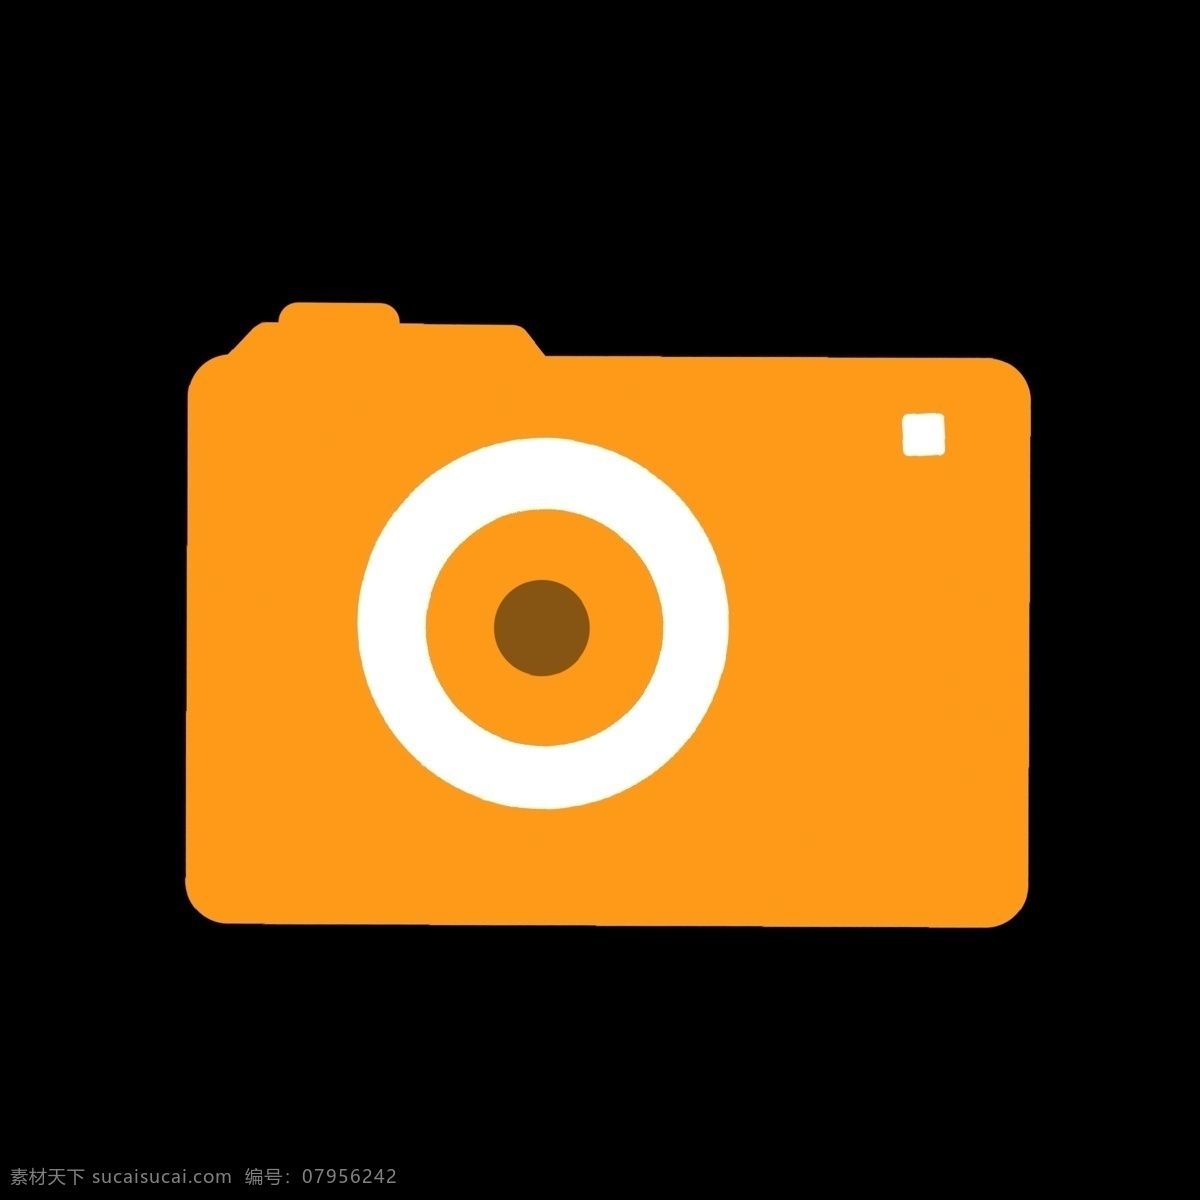 黄色 相机 矢量 图标 暖色 几何图形 彩色 白色 视频图标 卡通 ppt可用 简单 简约 简洁